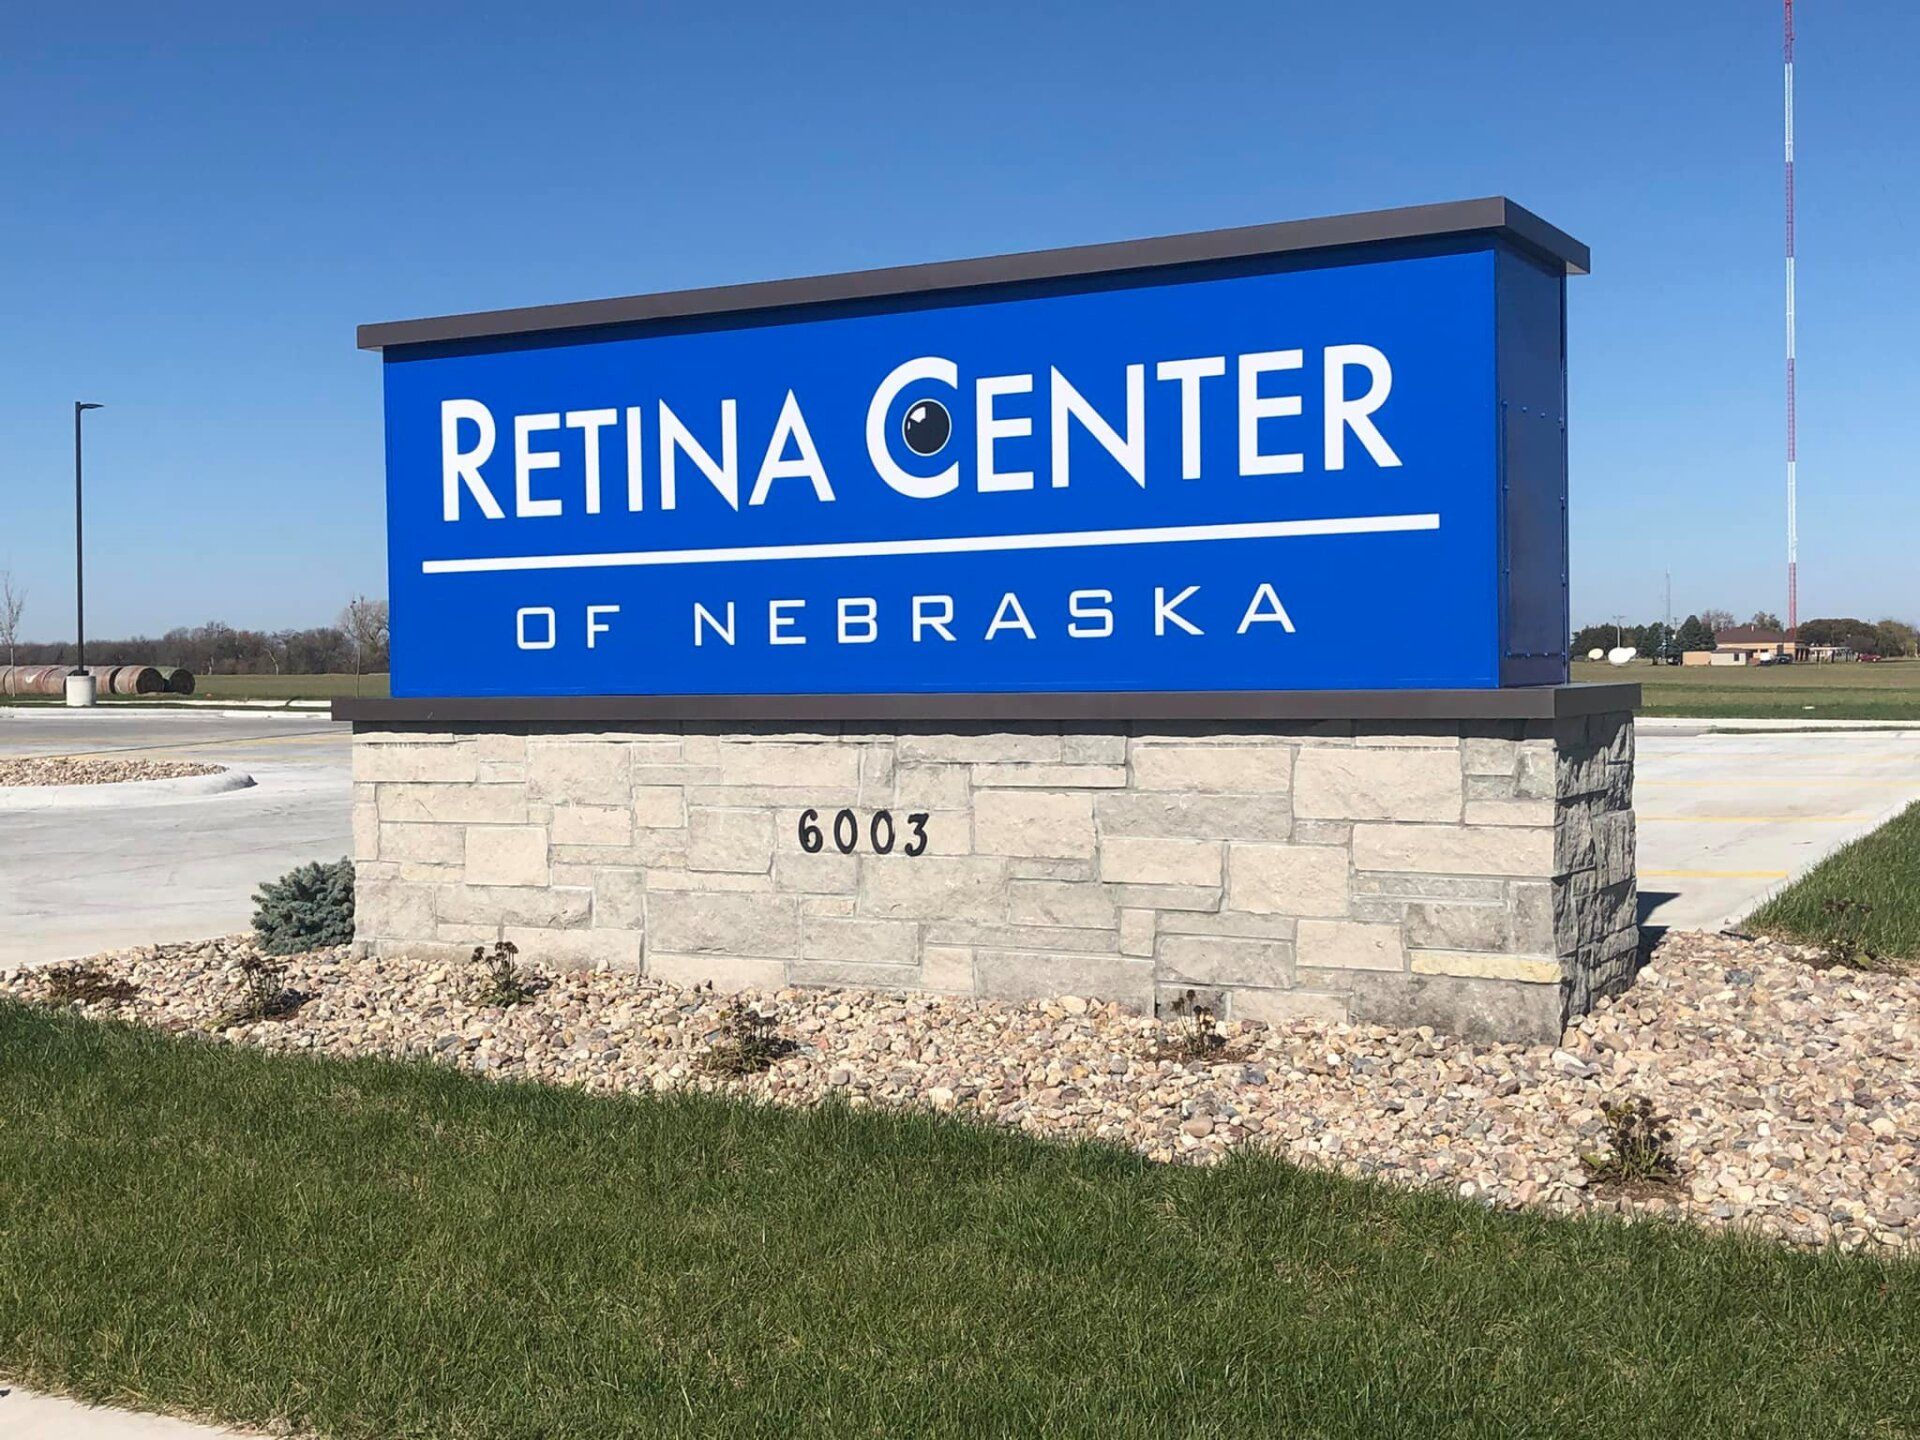 Retina Center Of Nebraska — Hastings, NE — Johnson Imperial Homes